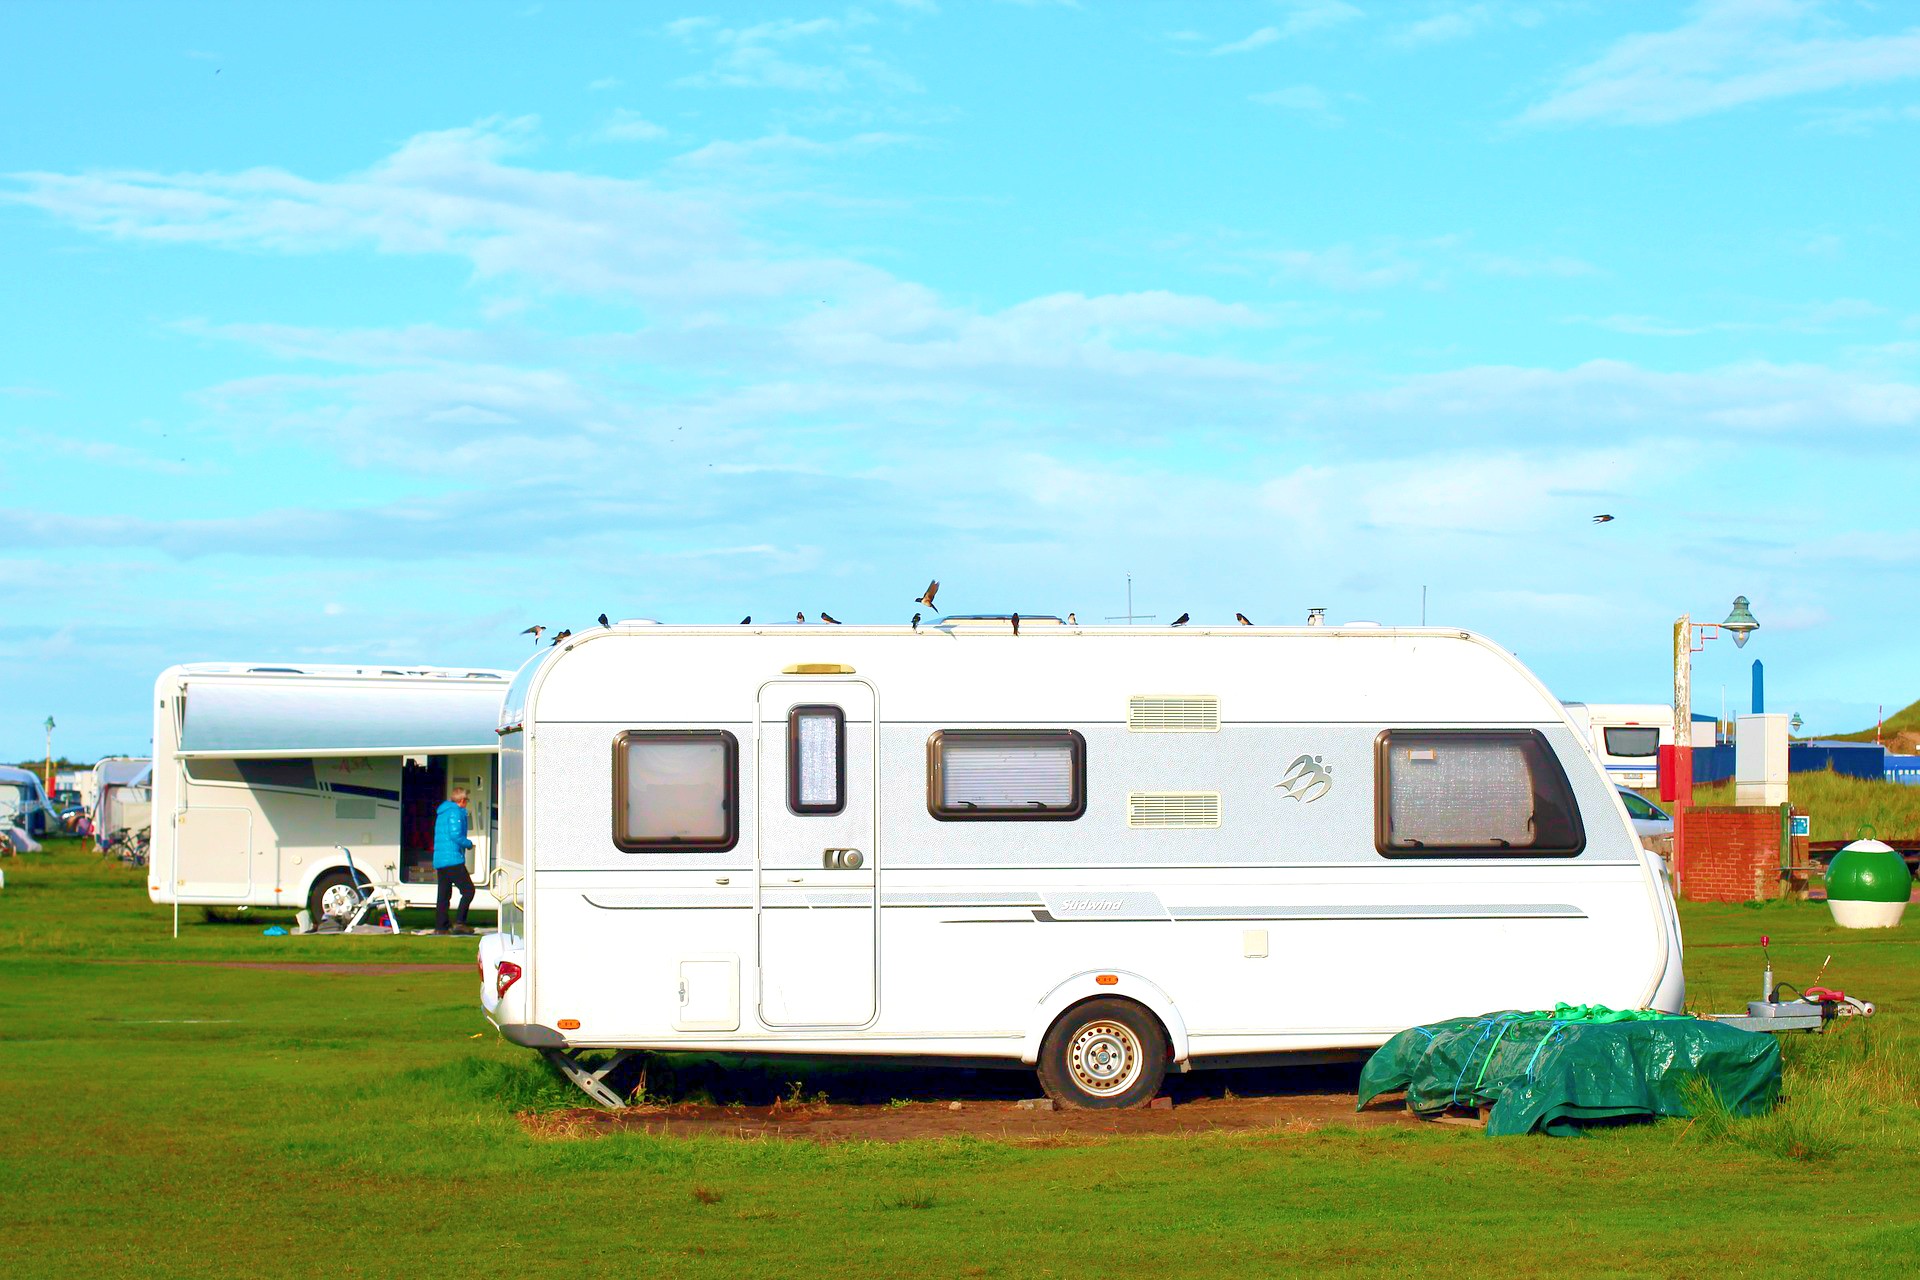 <img src="caravan.jpg" alt="caravan in field with blue sky"/> 